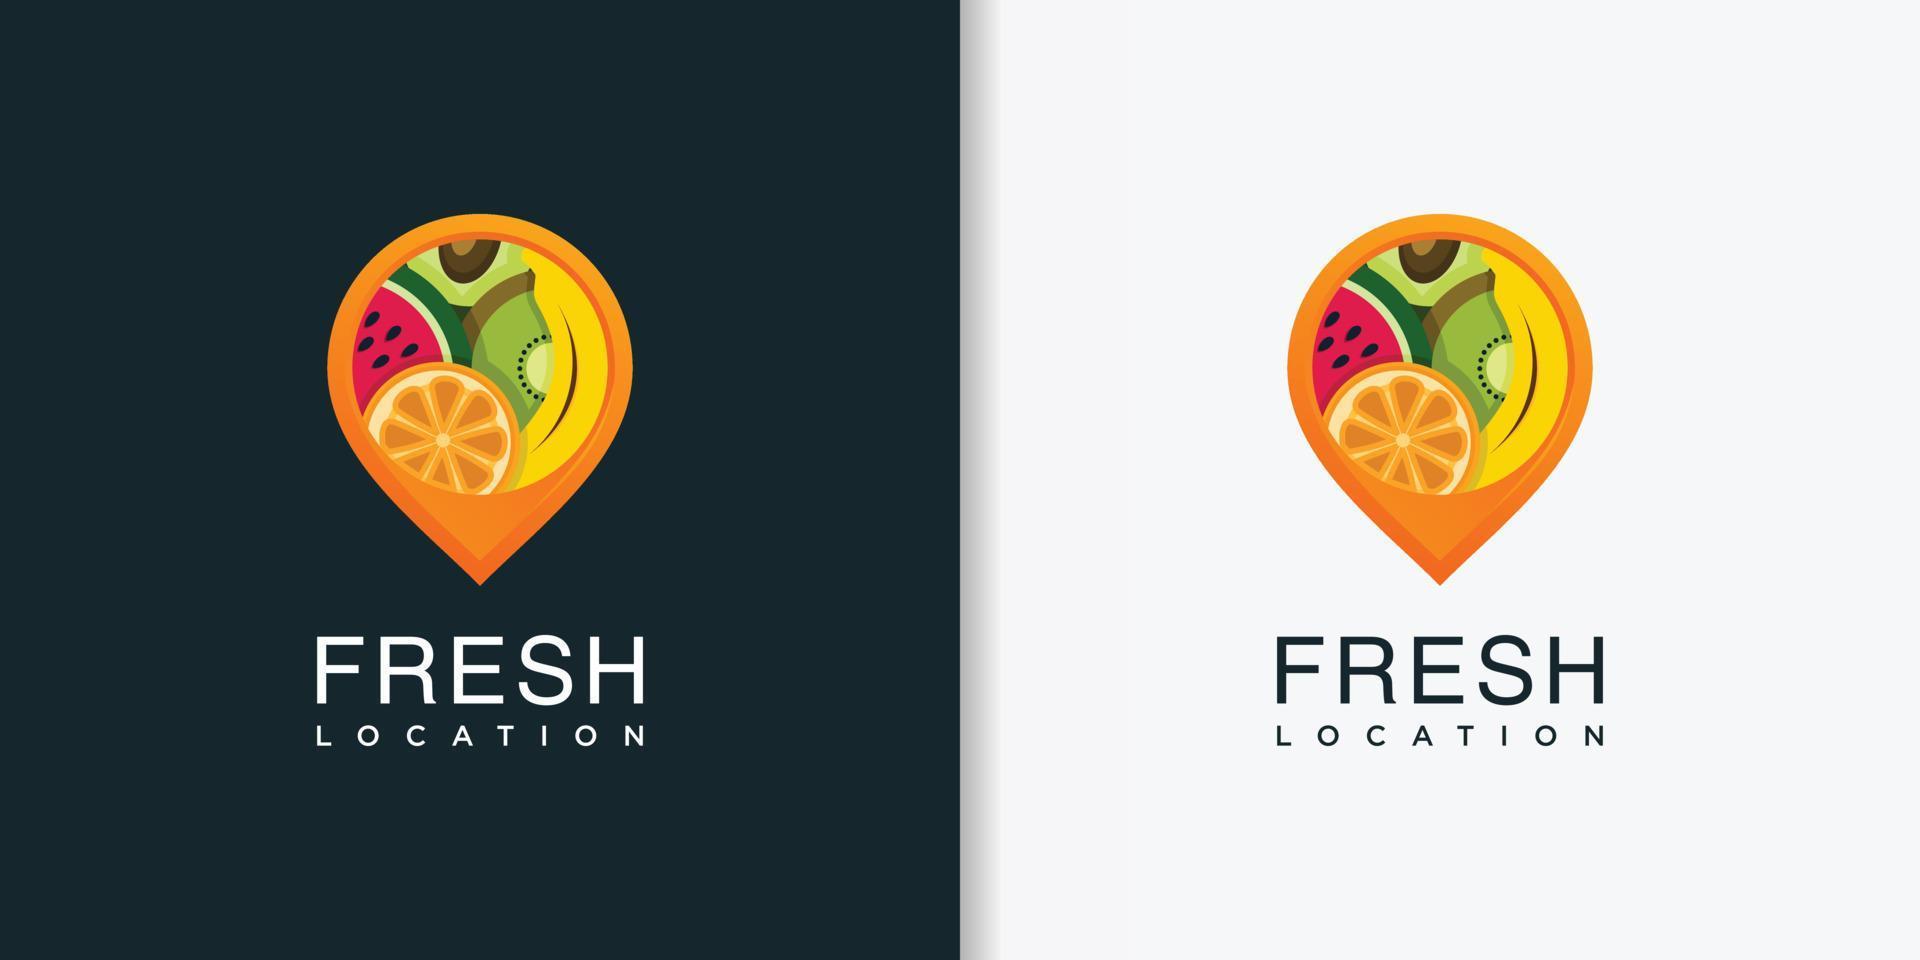 local de logotipo fresco com modelo de design de estilo abstrato moderno, fresco, frutas, localização, pino, vetor premium